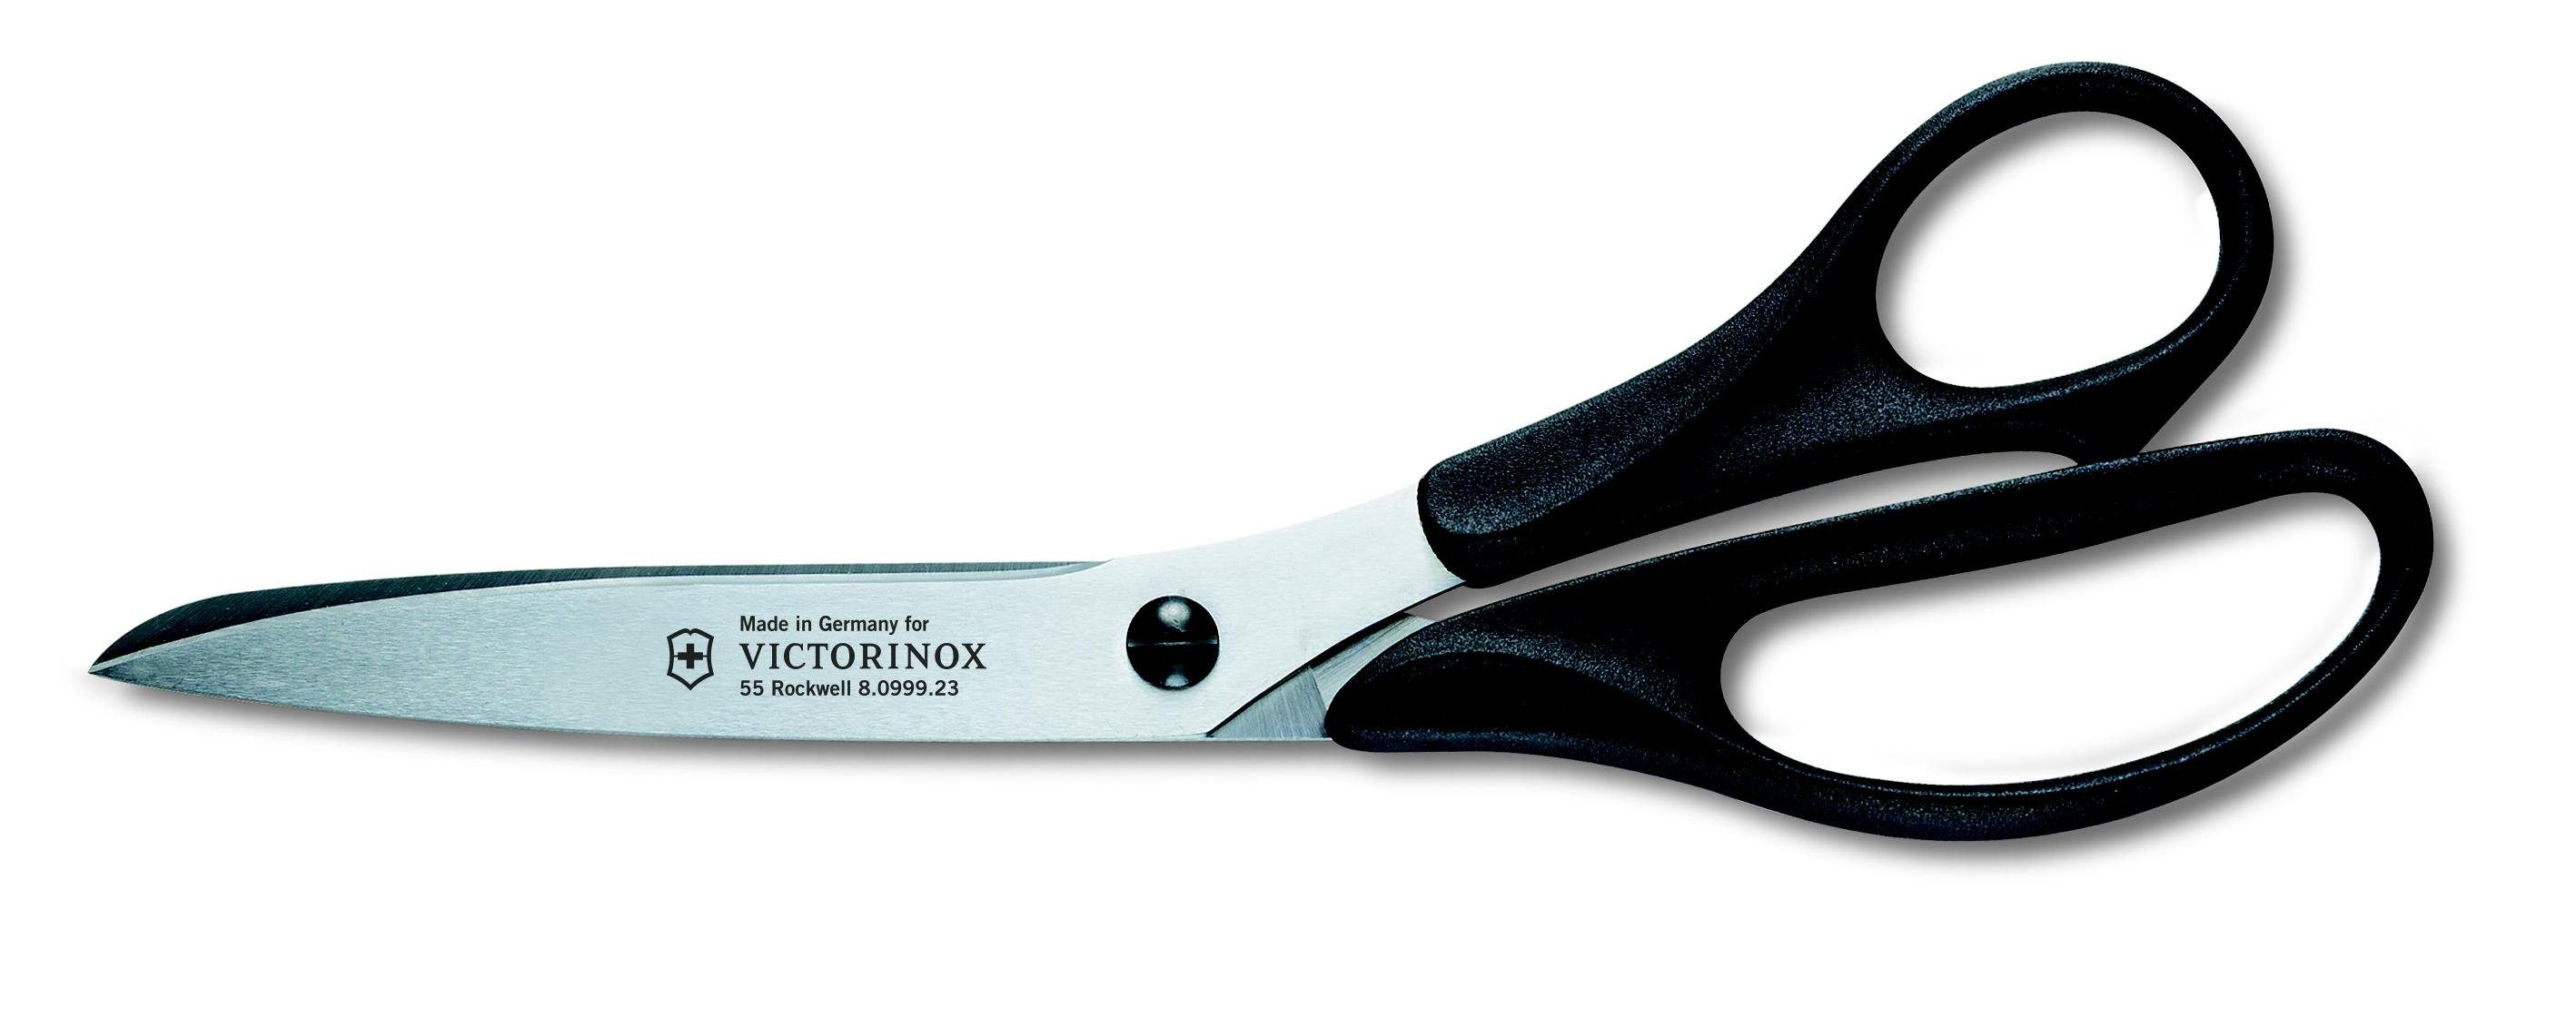 Victorinox rostfrei Universalschere, Taschenmesser